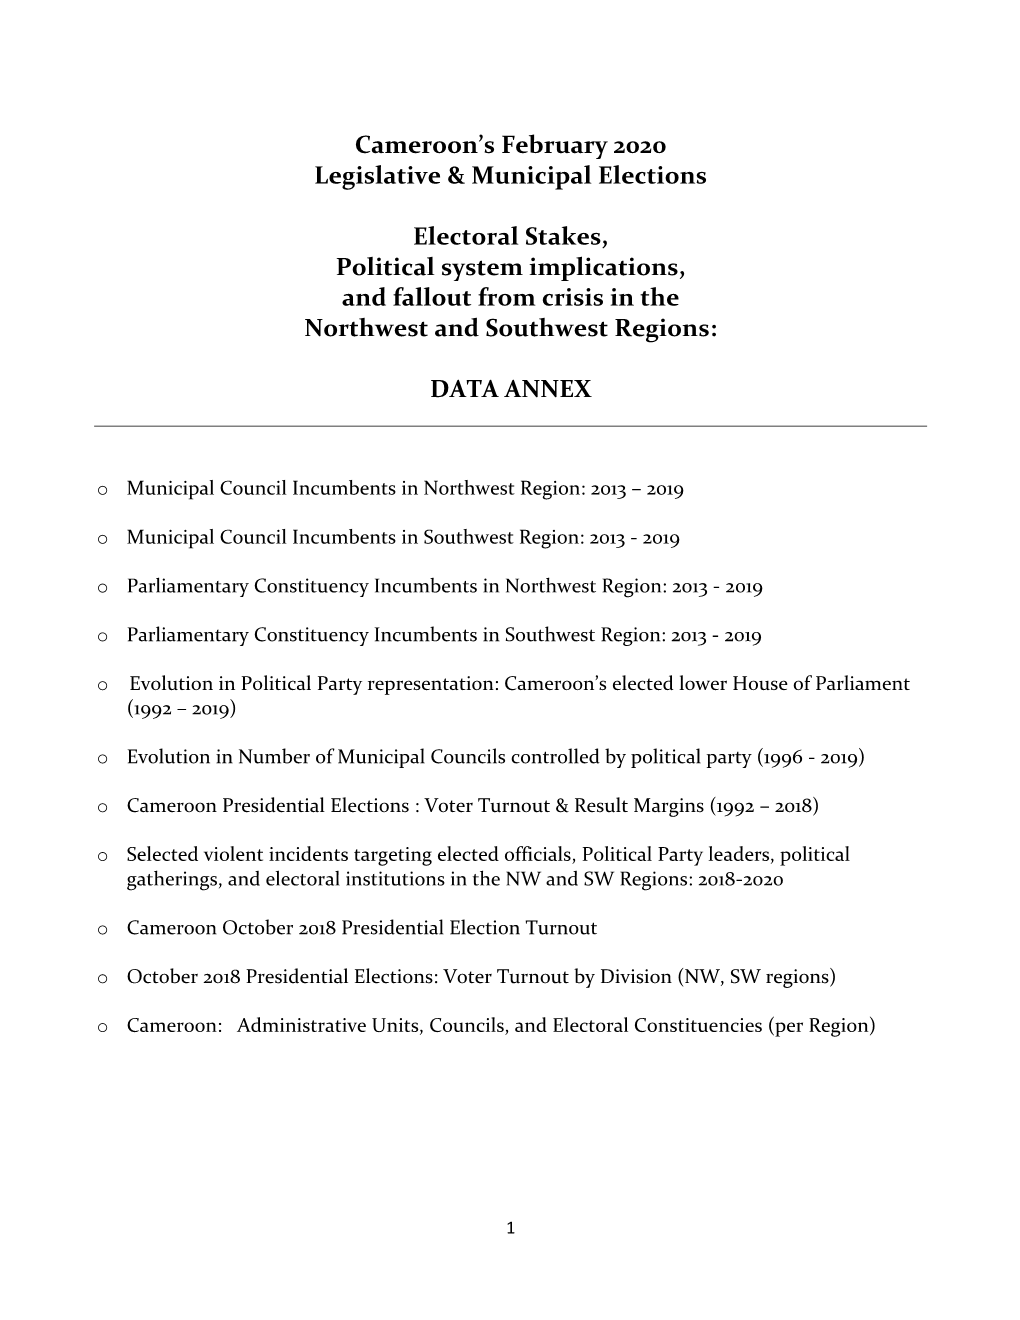 Cameroon's February 2020 Legislative & Municipal Elections